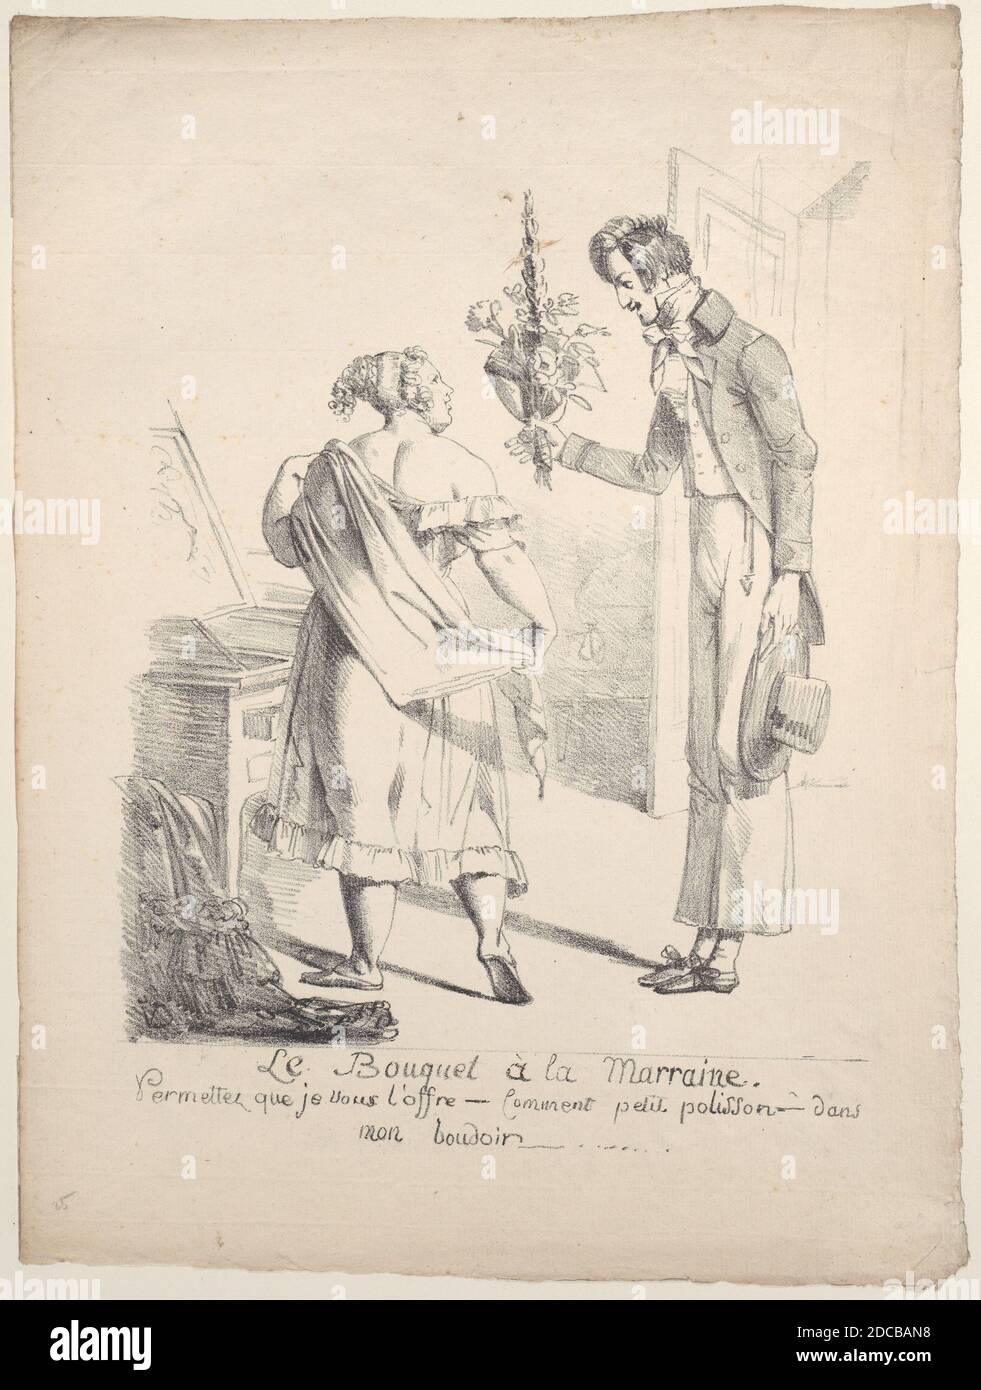 Der Blumenstrauß der Godmother, ca. 1800-1825. [Le Bouquet &#xe0; la Marraine. Permettez que je vous l'offre - Kommentar Petit polisson - dans mon boudoir...]. Stockfoto